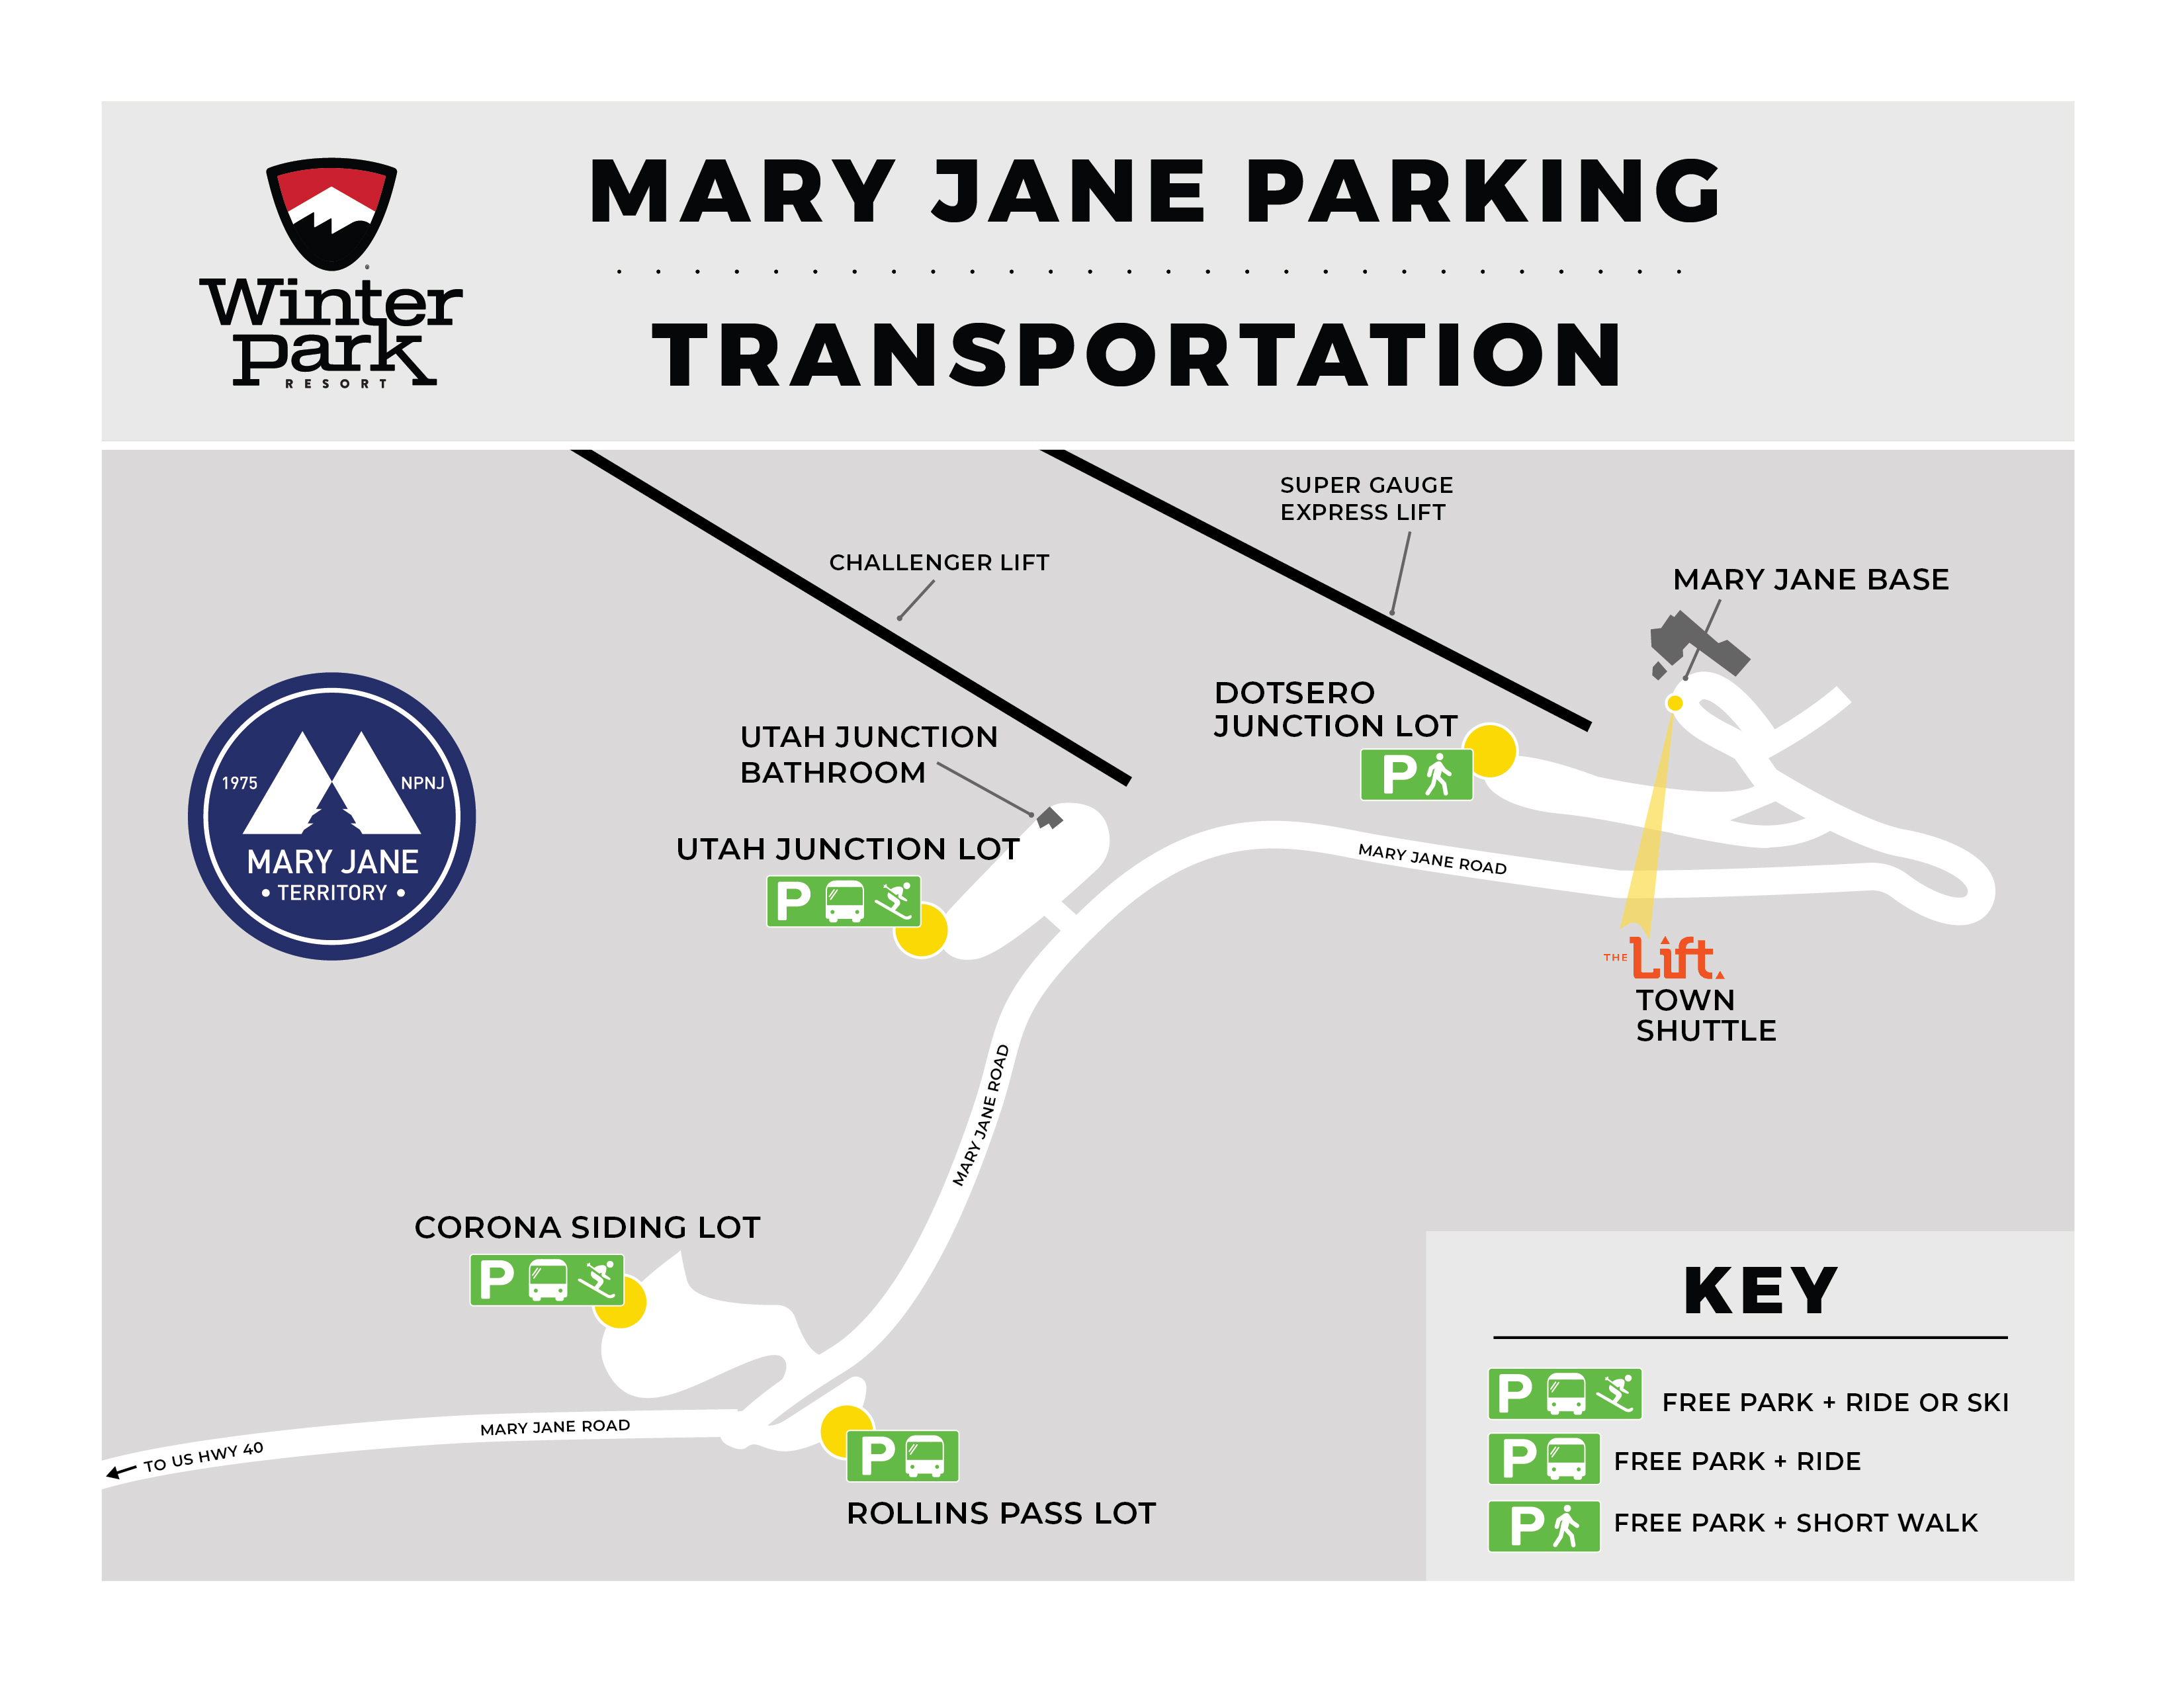 Mary Jane Base Parking